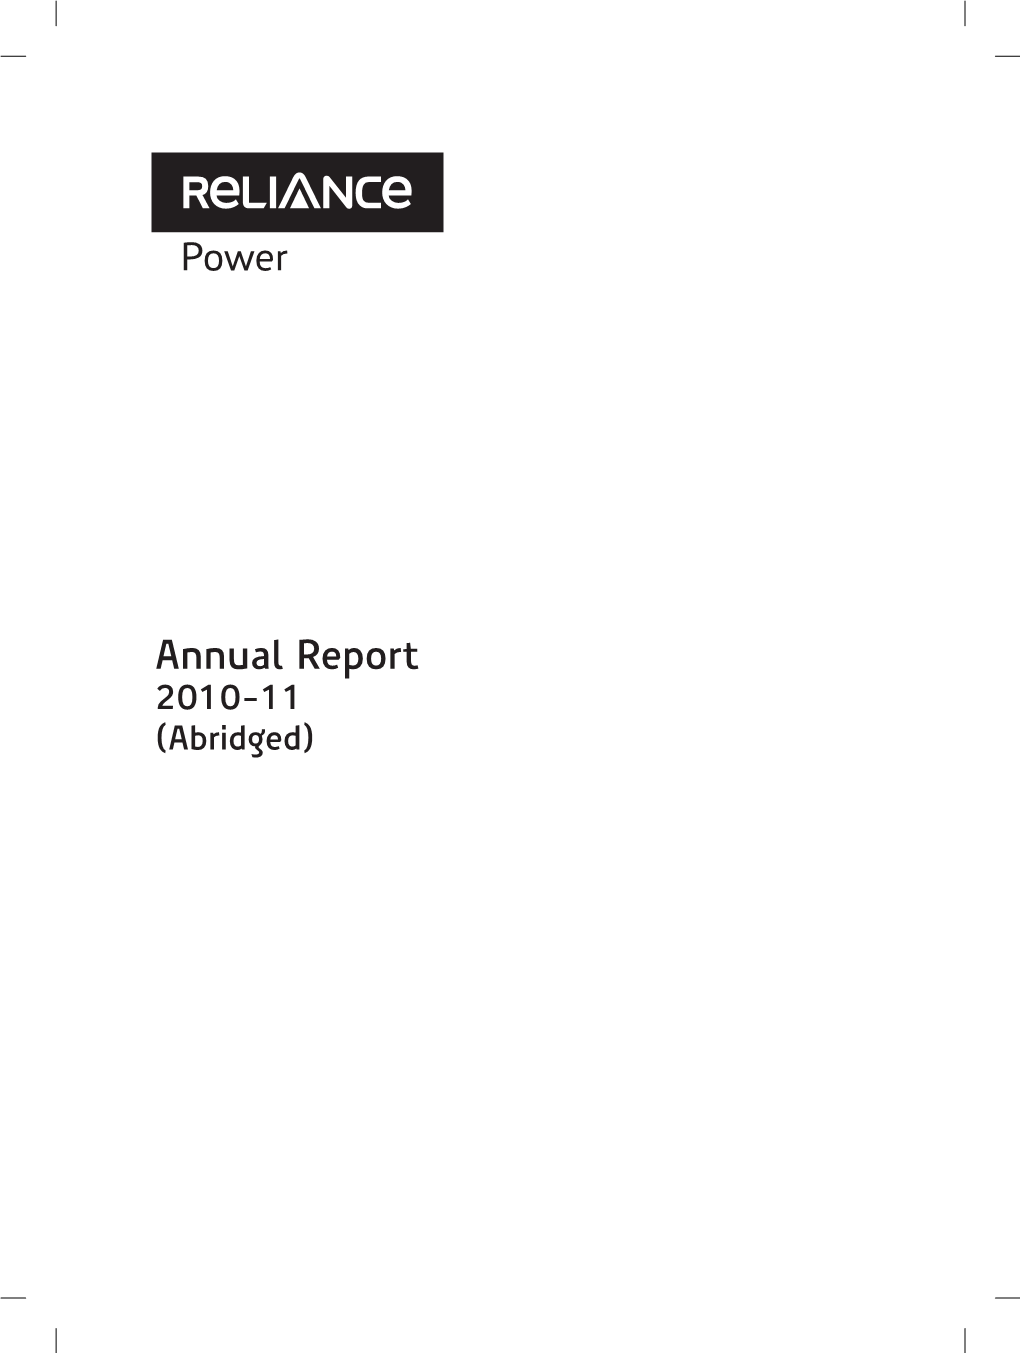 Annual Report 2010-11 (Abridged) Dhirubhai H